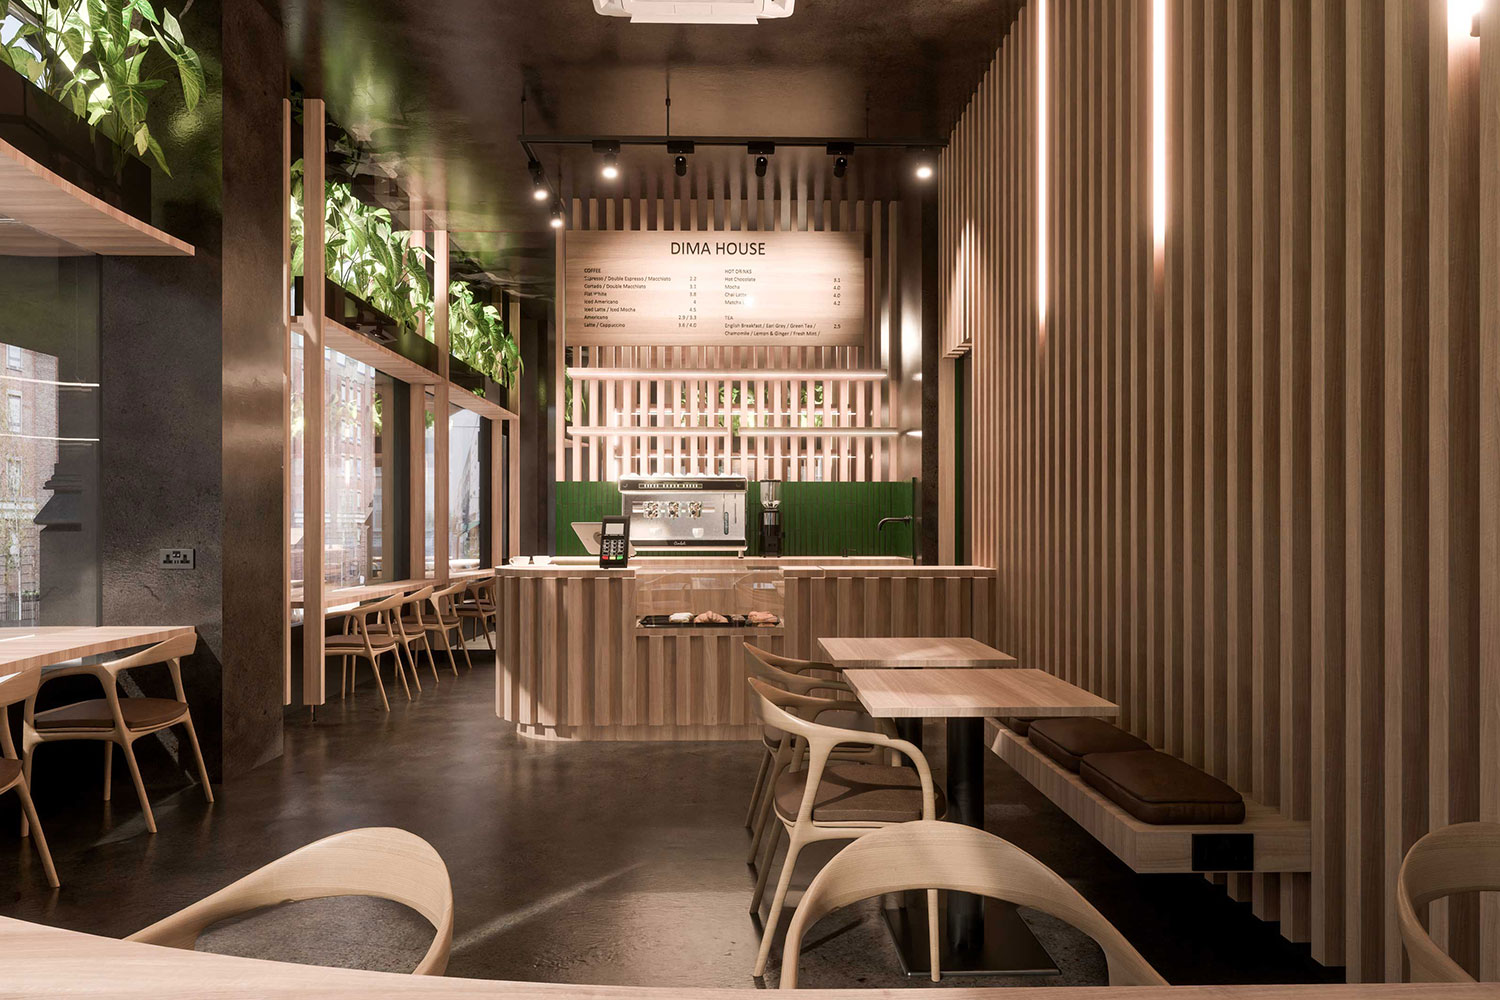 marylebone westminster restaurant fit out interior design slatted timber zellige tiles polished plaster